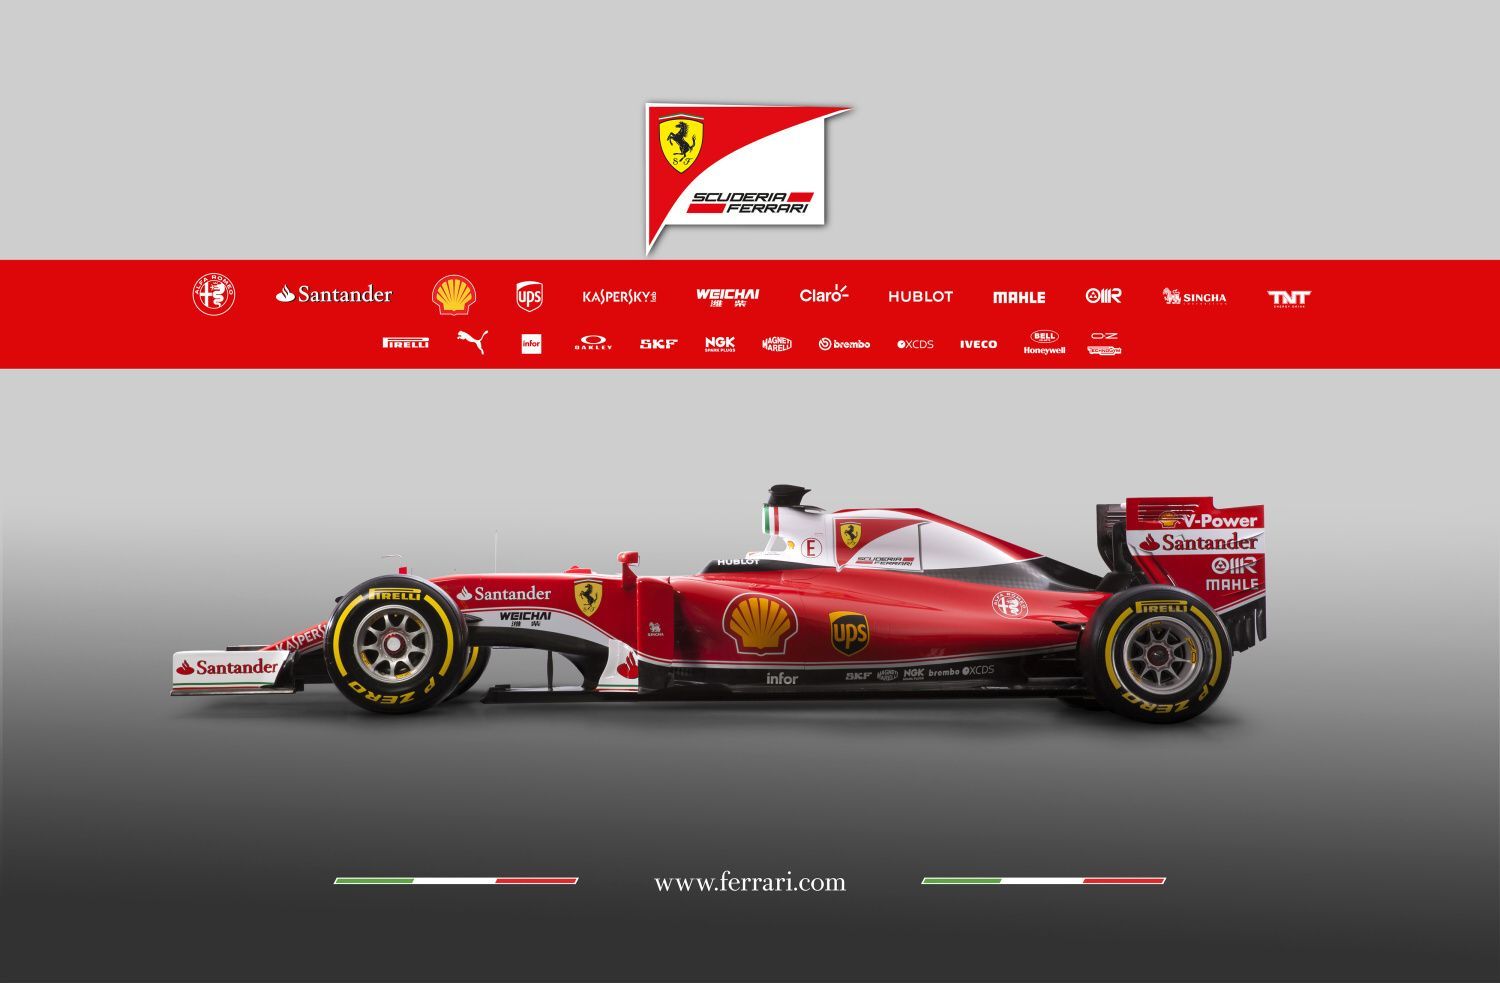 F1 2016, Ferrari SF16-H